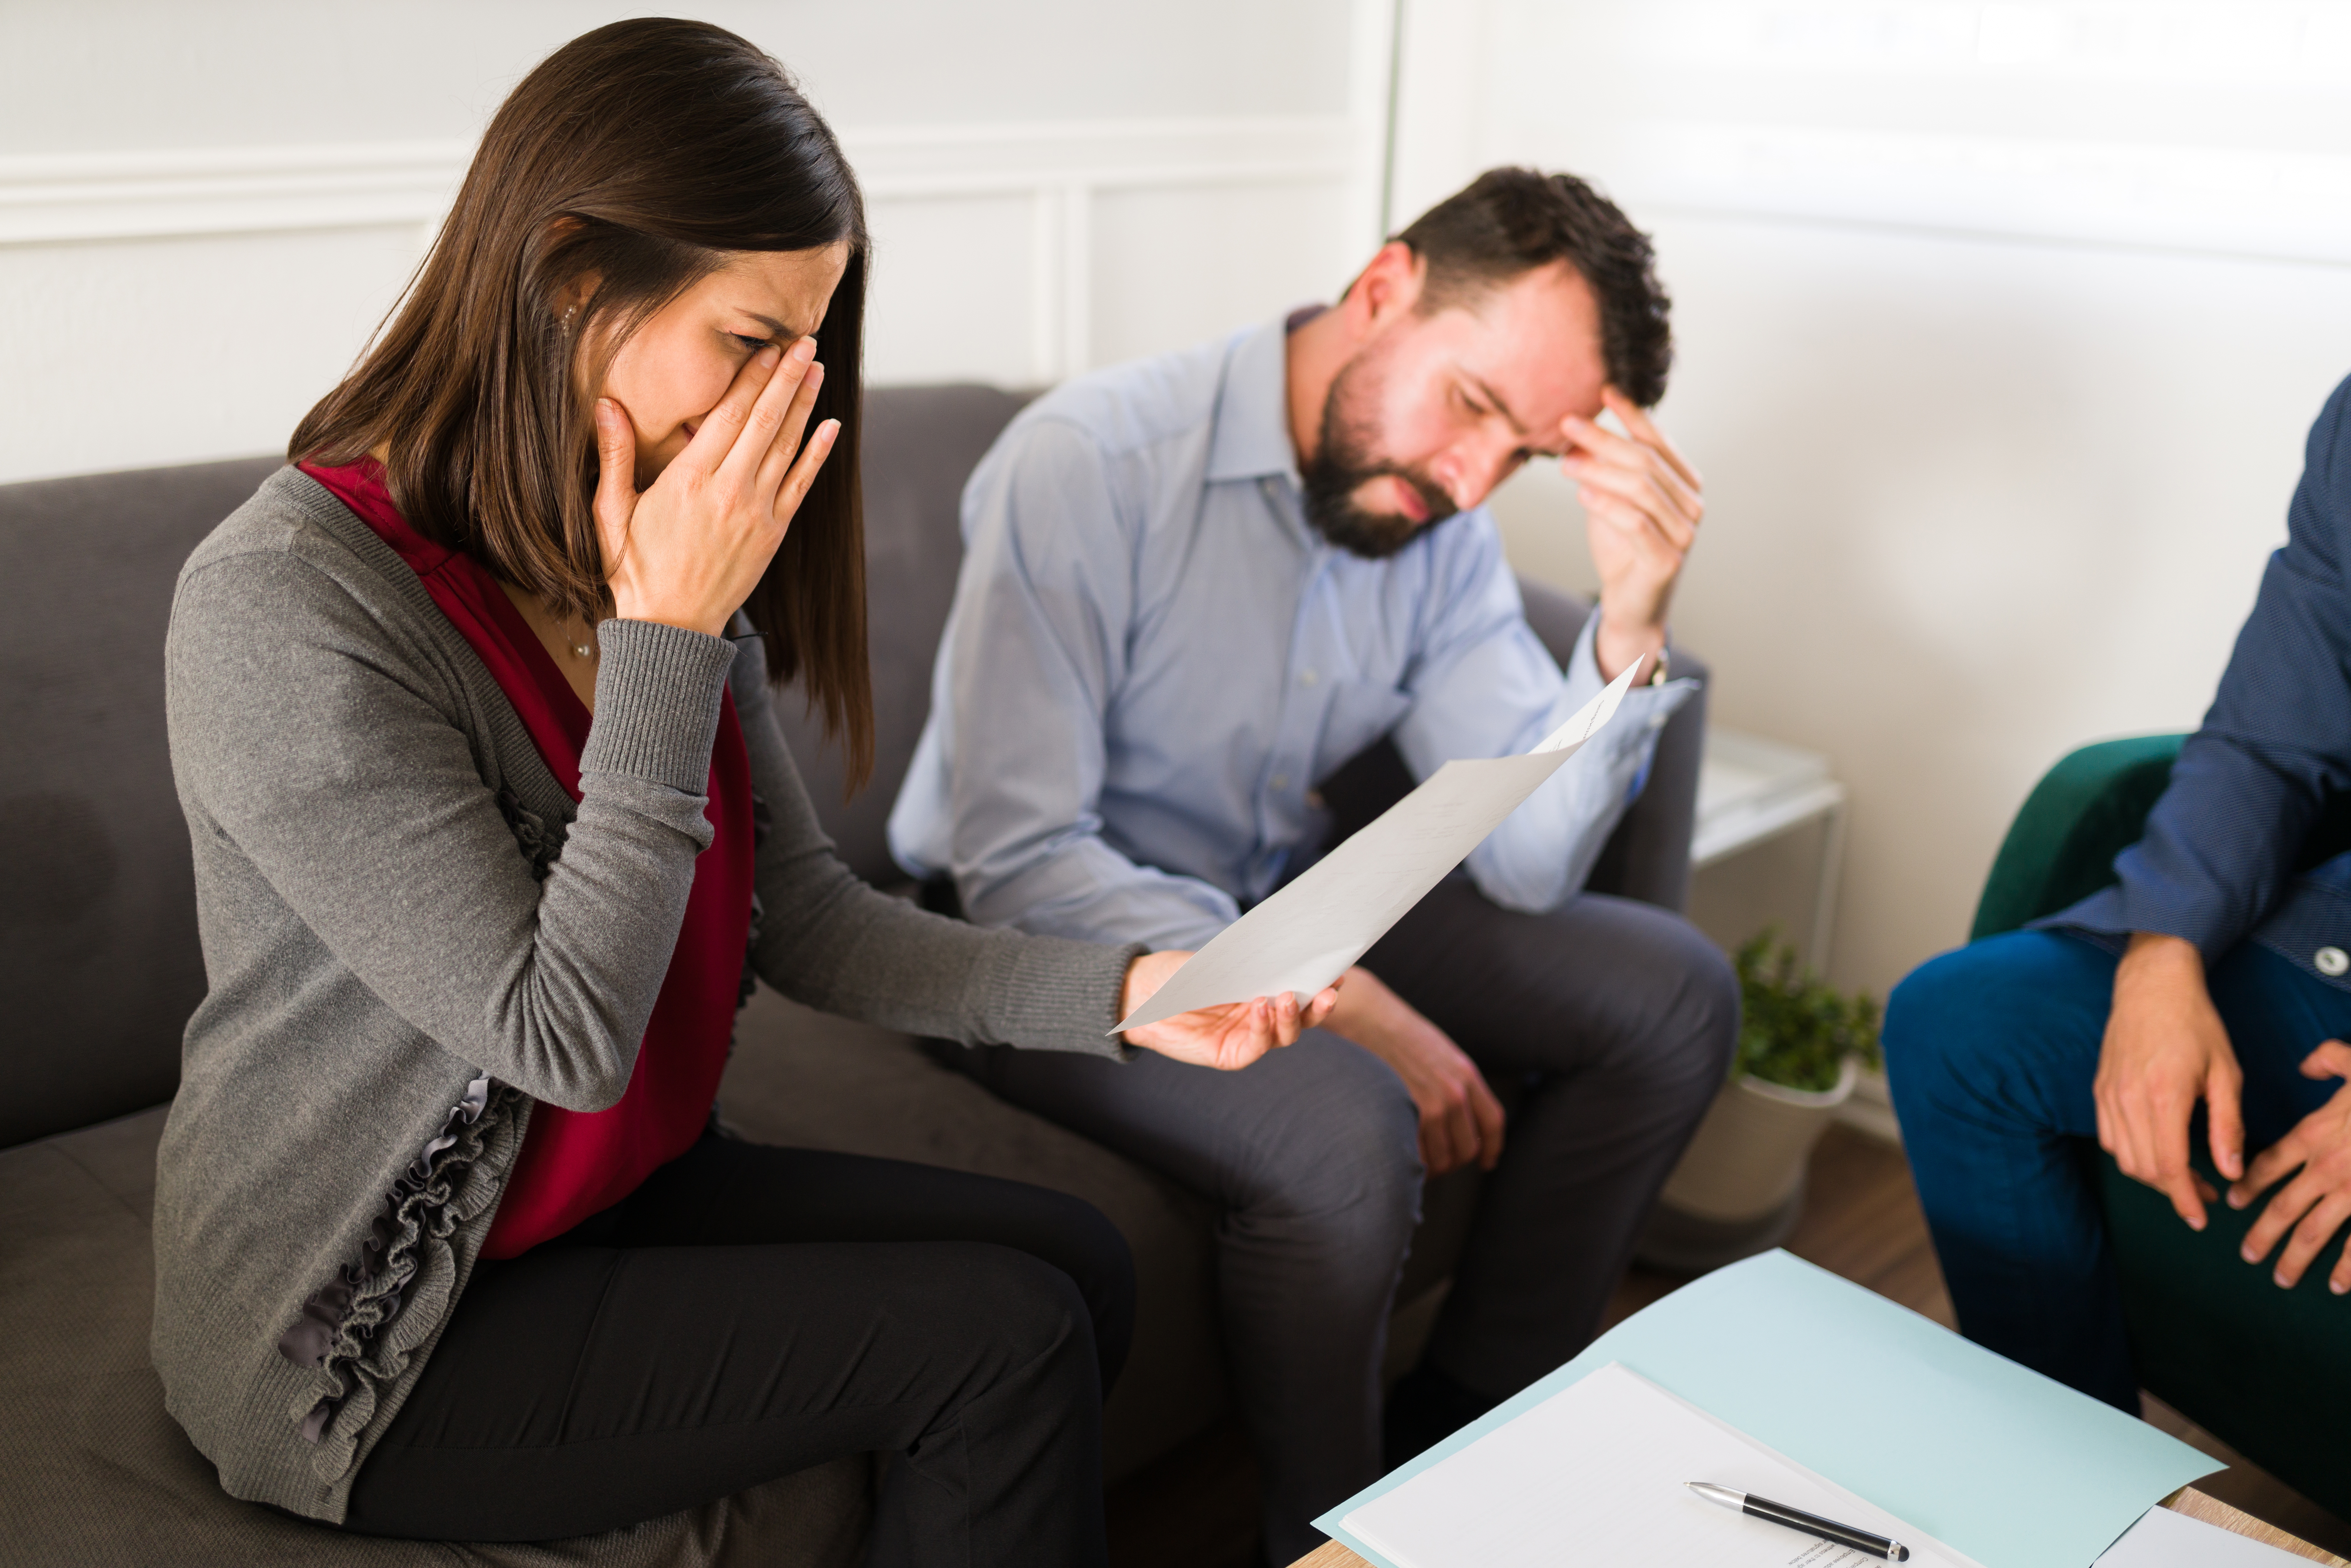 Eine weinende Frau mit einem Blatt Papier in der Hand und einem Mann, der neben ihr sitzt | Quelle: Shutterstock